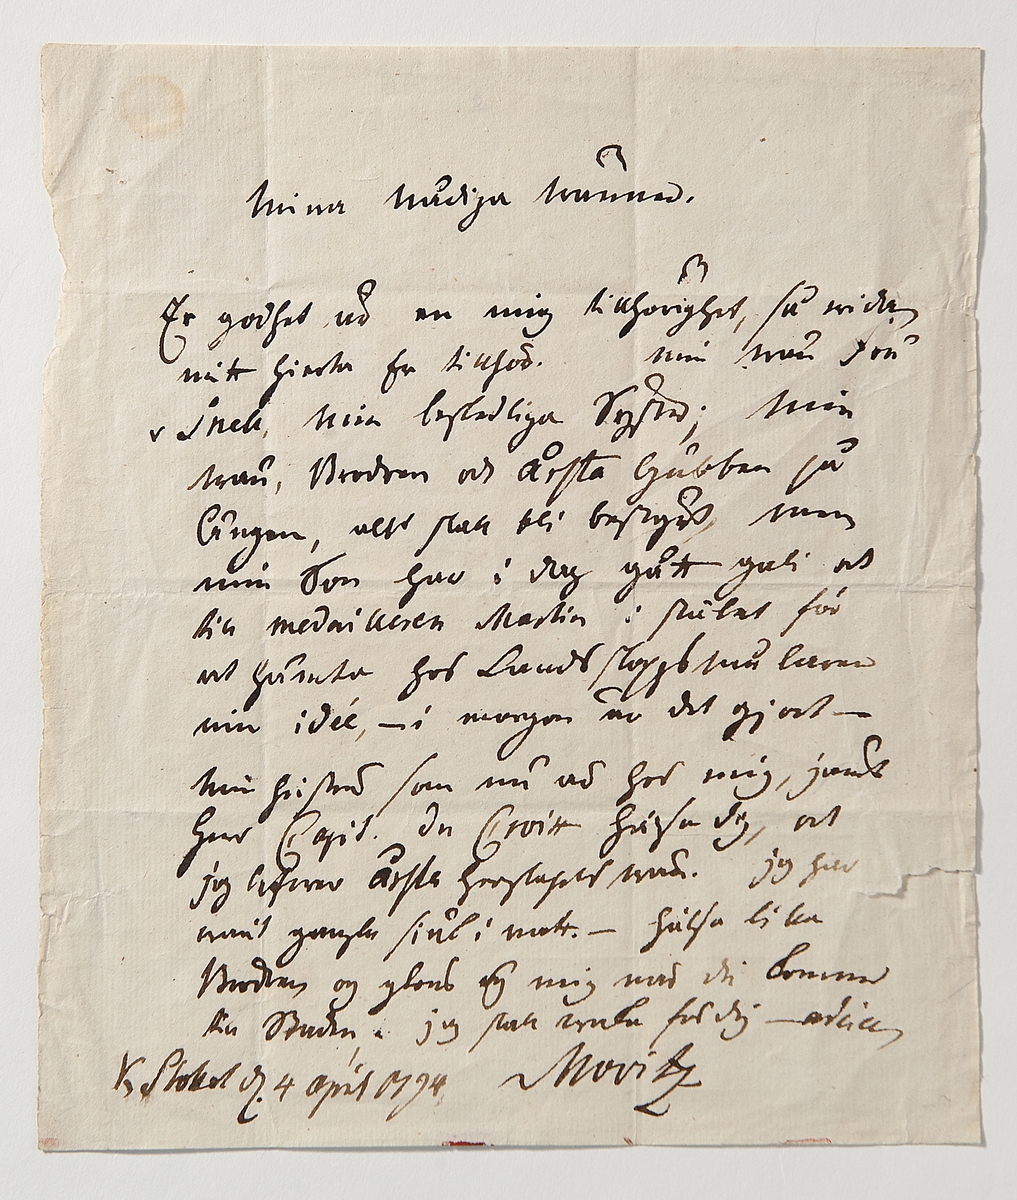 Brev, enligt uppgift, från Carl Michael Bellman till Märta Helena Reenstierna (Årstafrun) undertecknat 4 april 1794 Movitz.